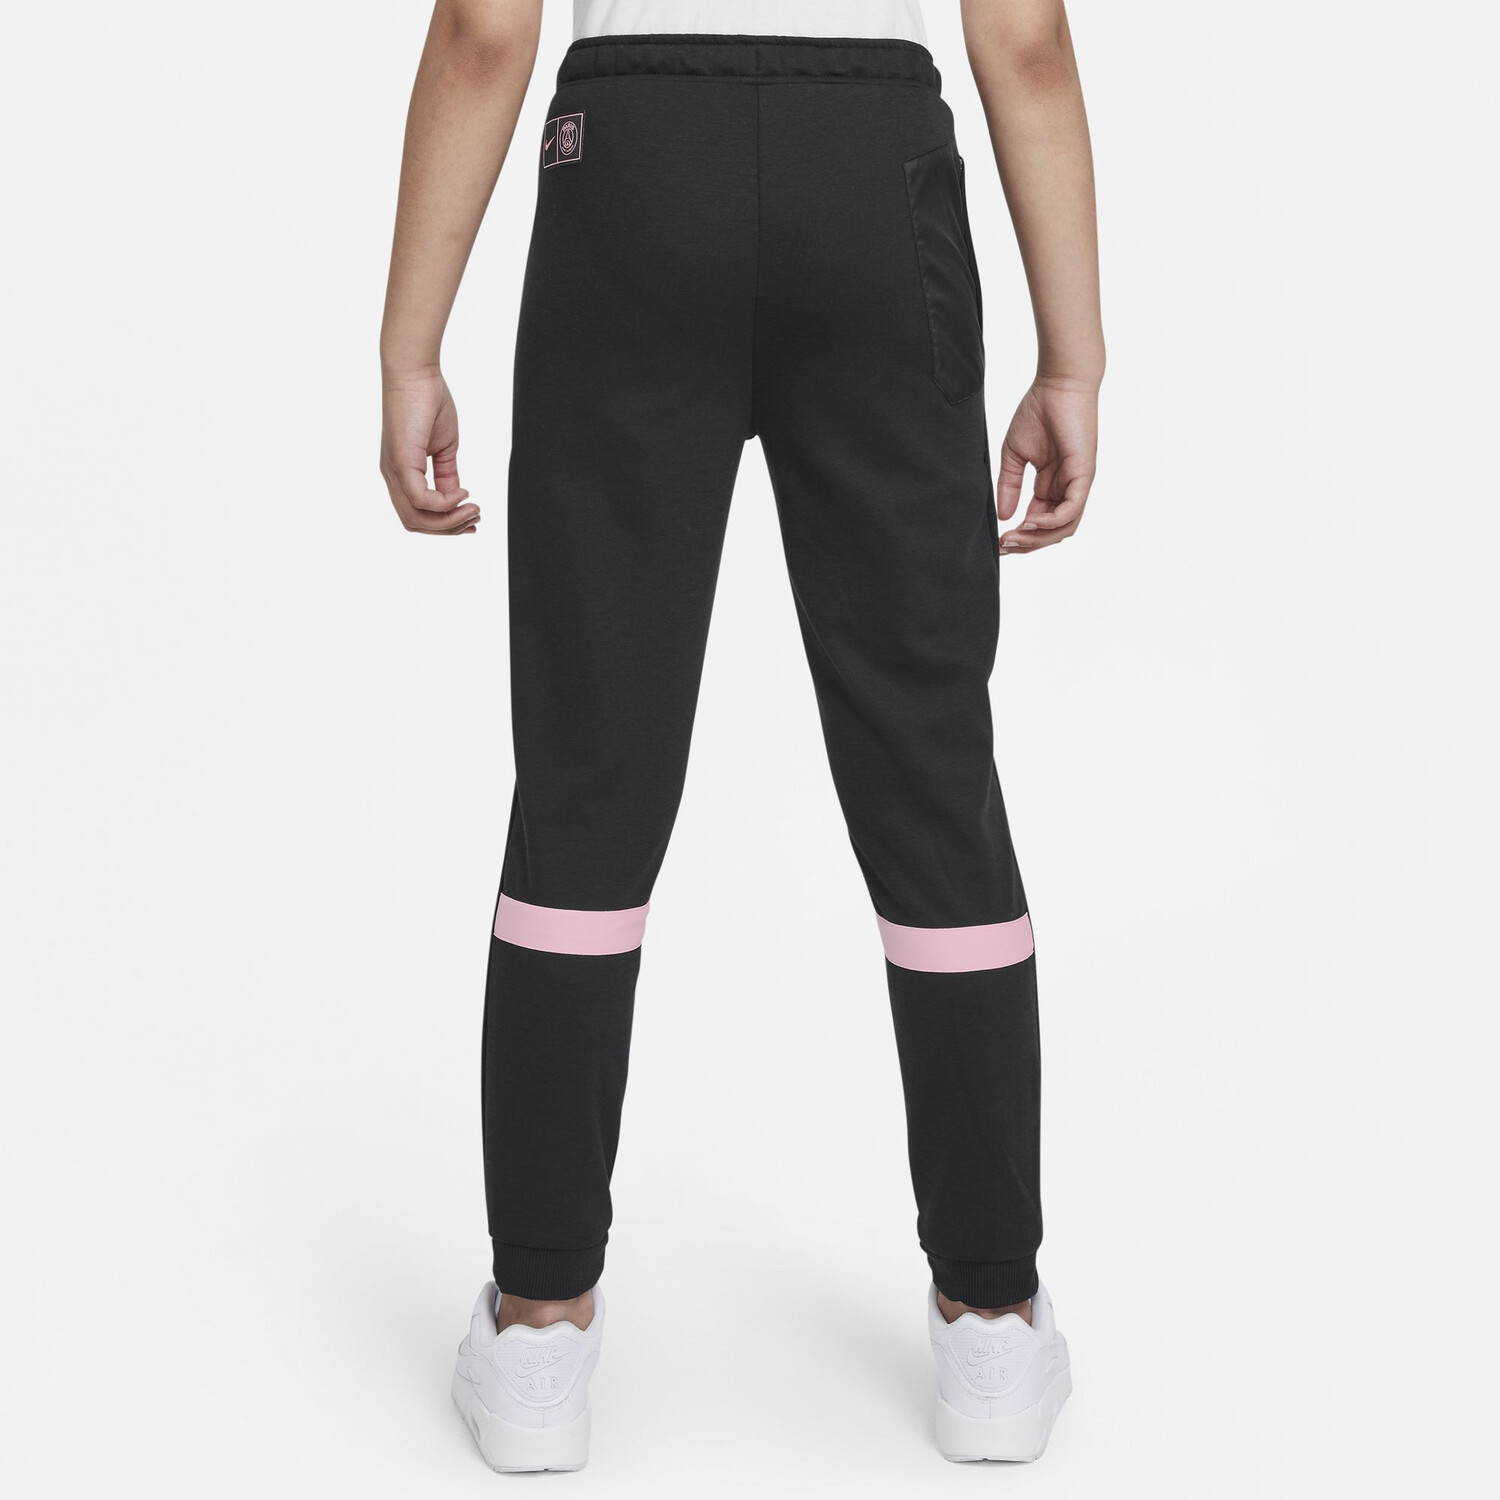 Pantalon survêtement PSG noir rose 2021/22 sur